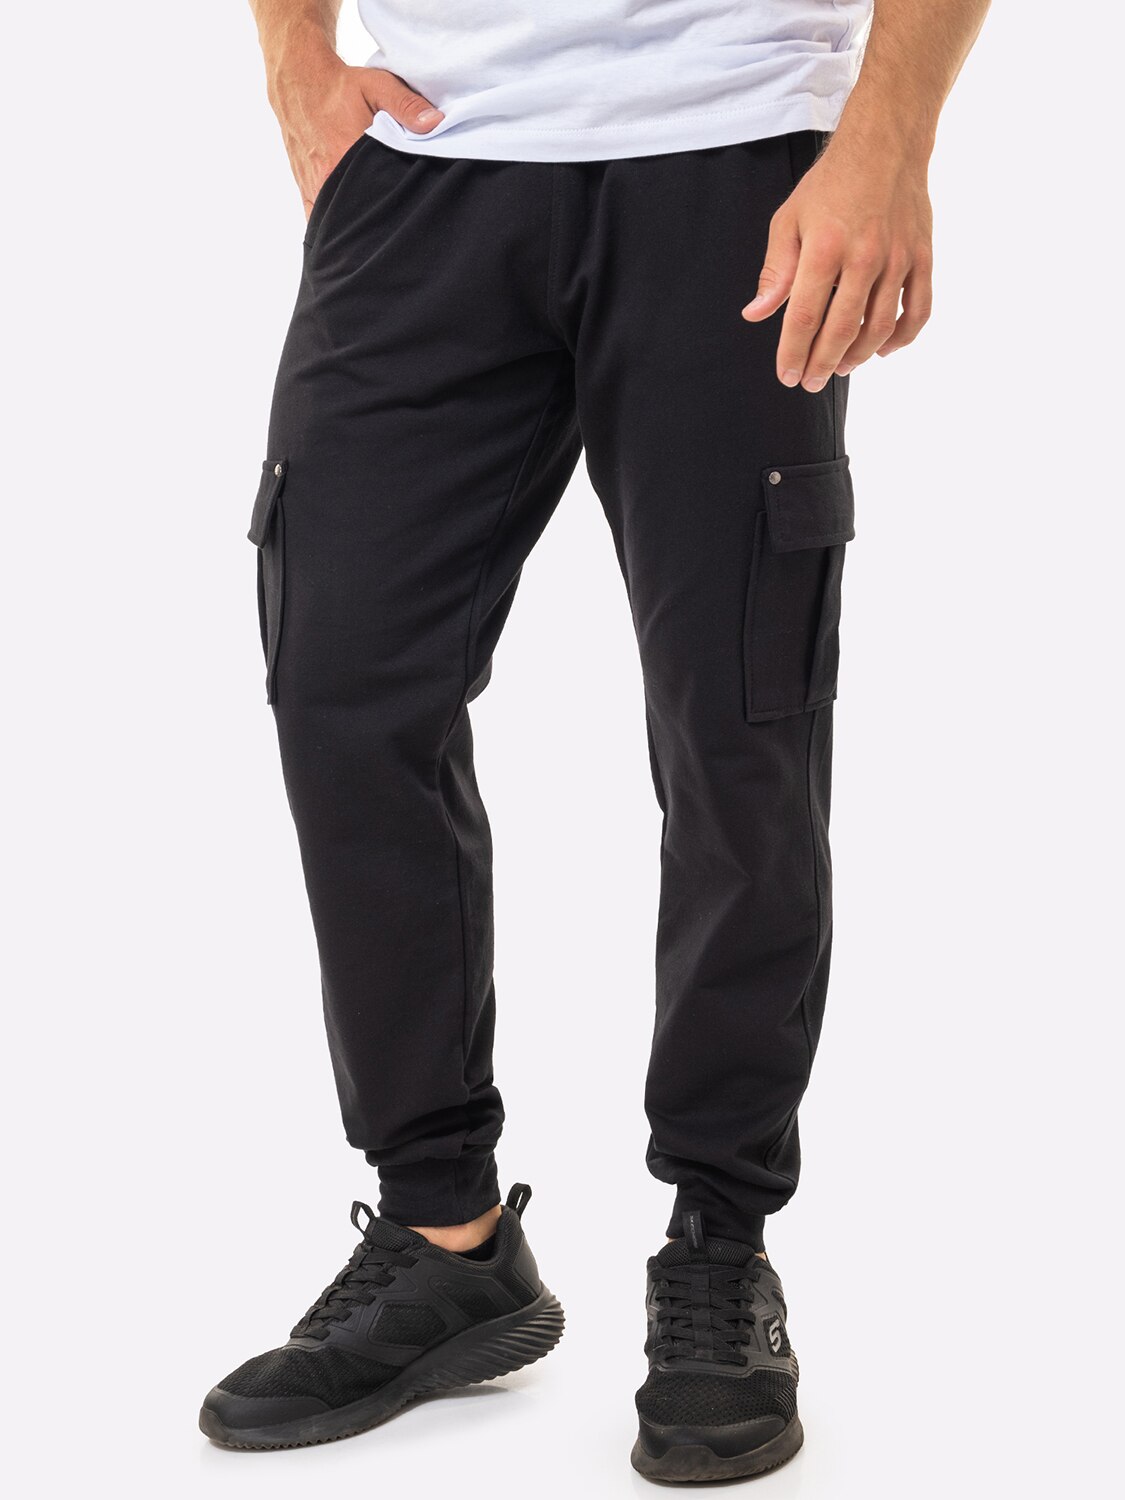 Спортивные брюки мужские HappyFox 9117 черные 52 RU